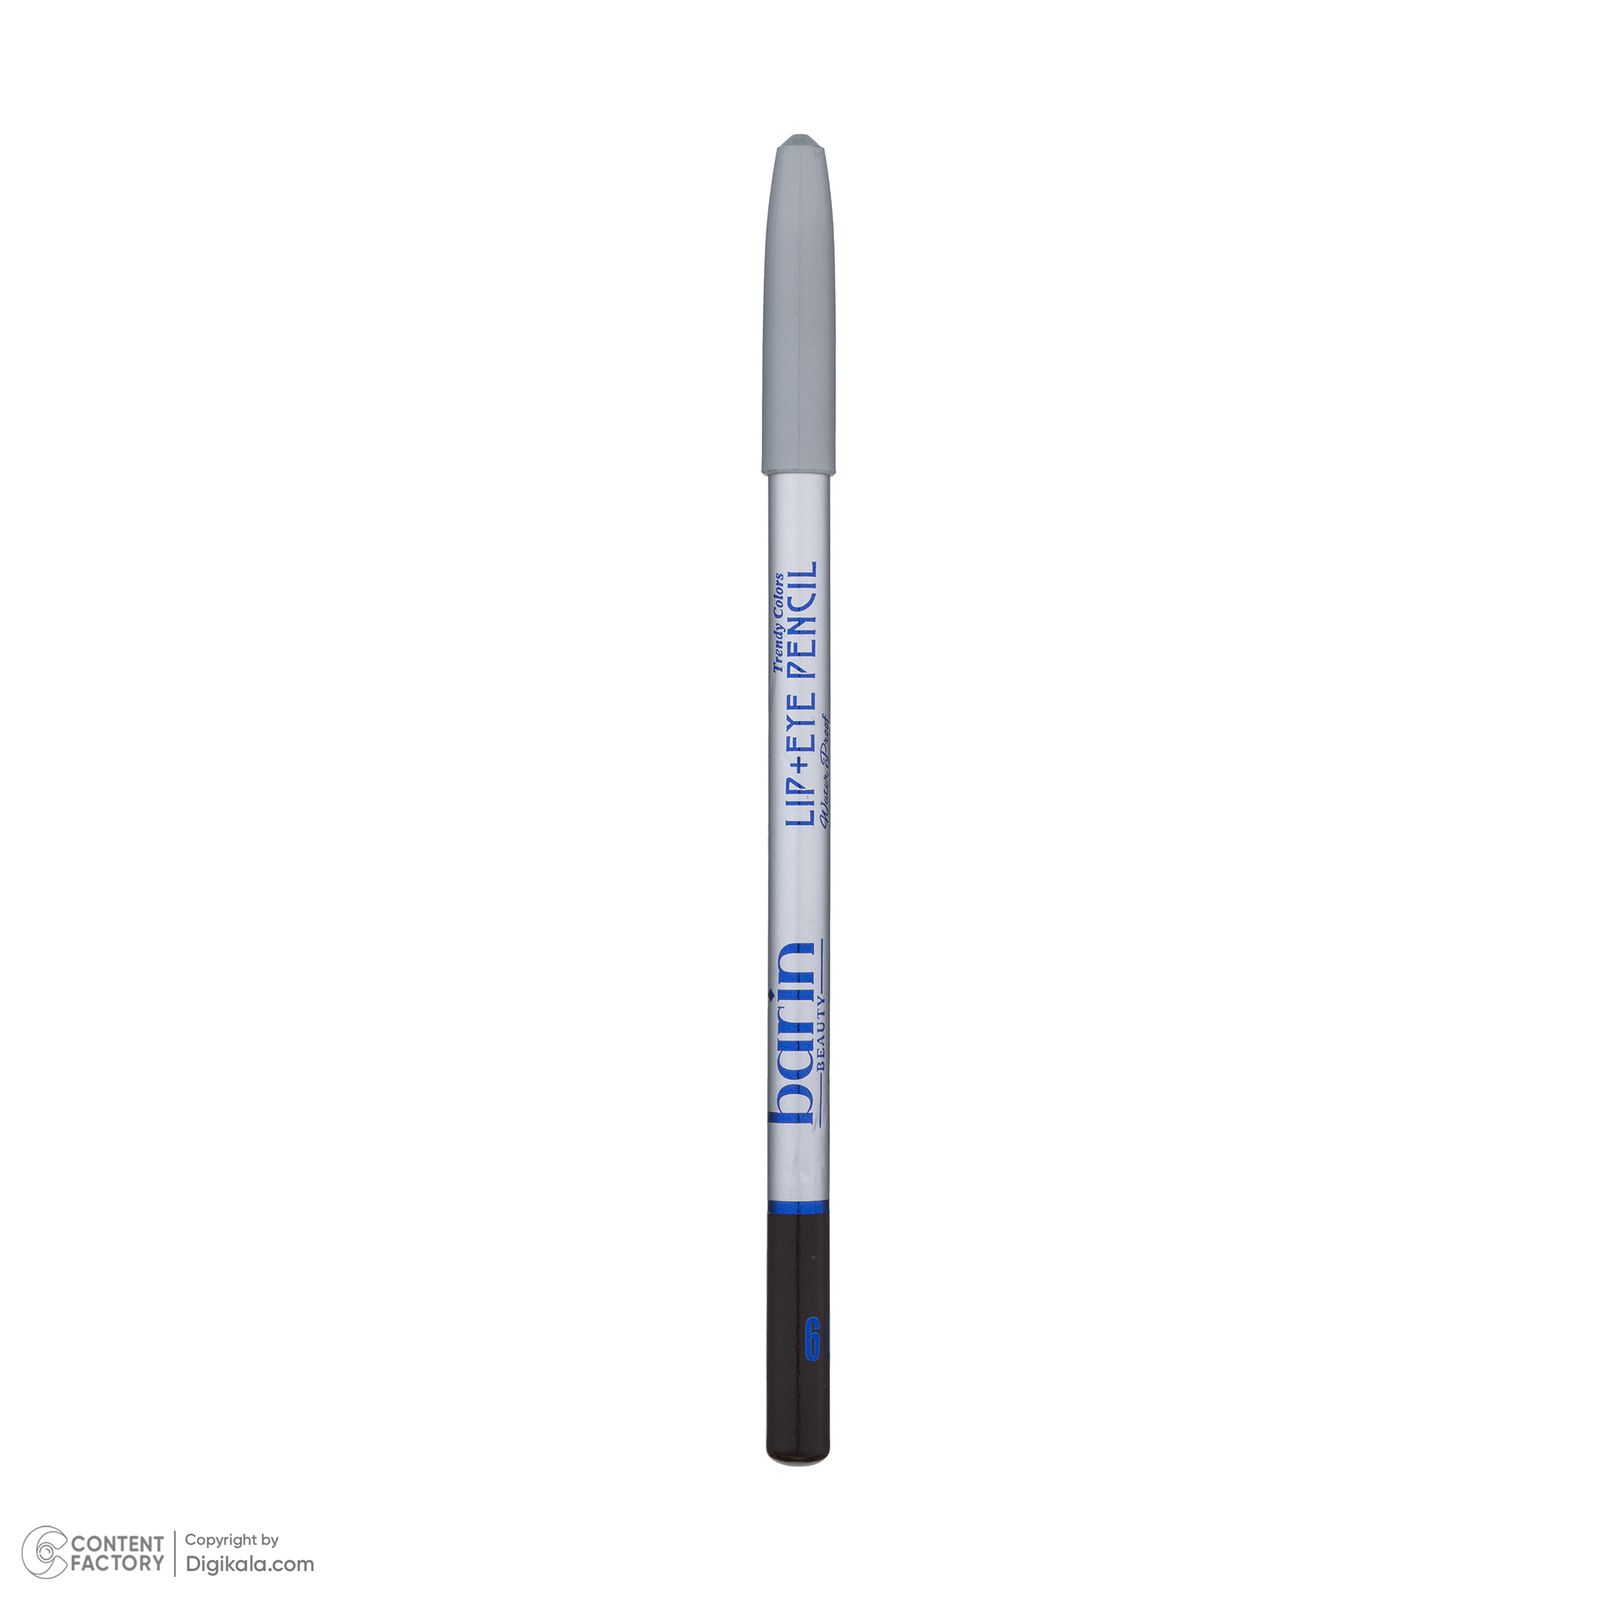  مداد چشم بارین بیوتی شماره 09 -  - 6